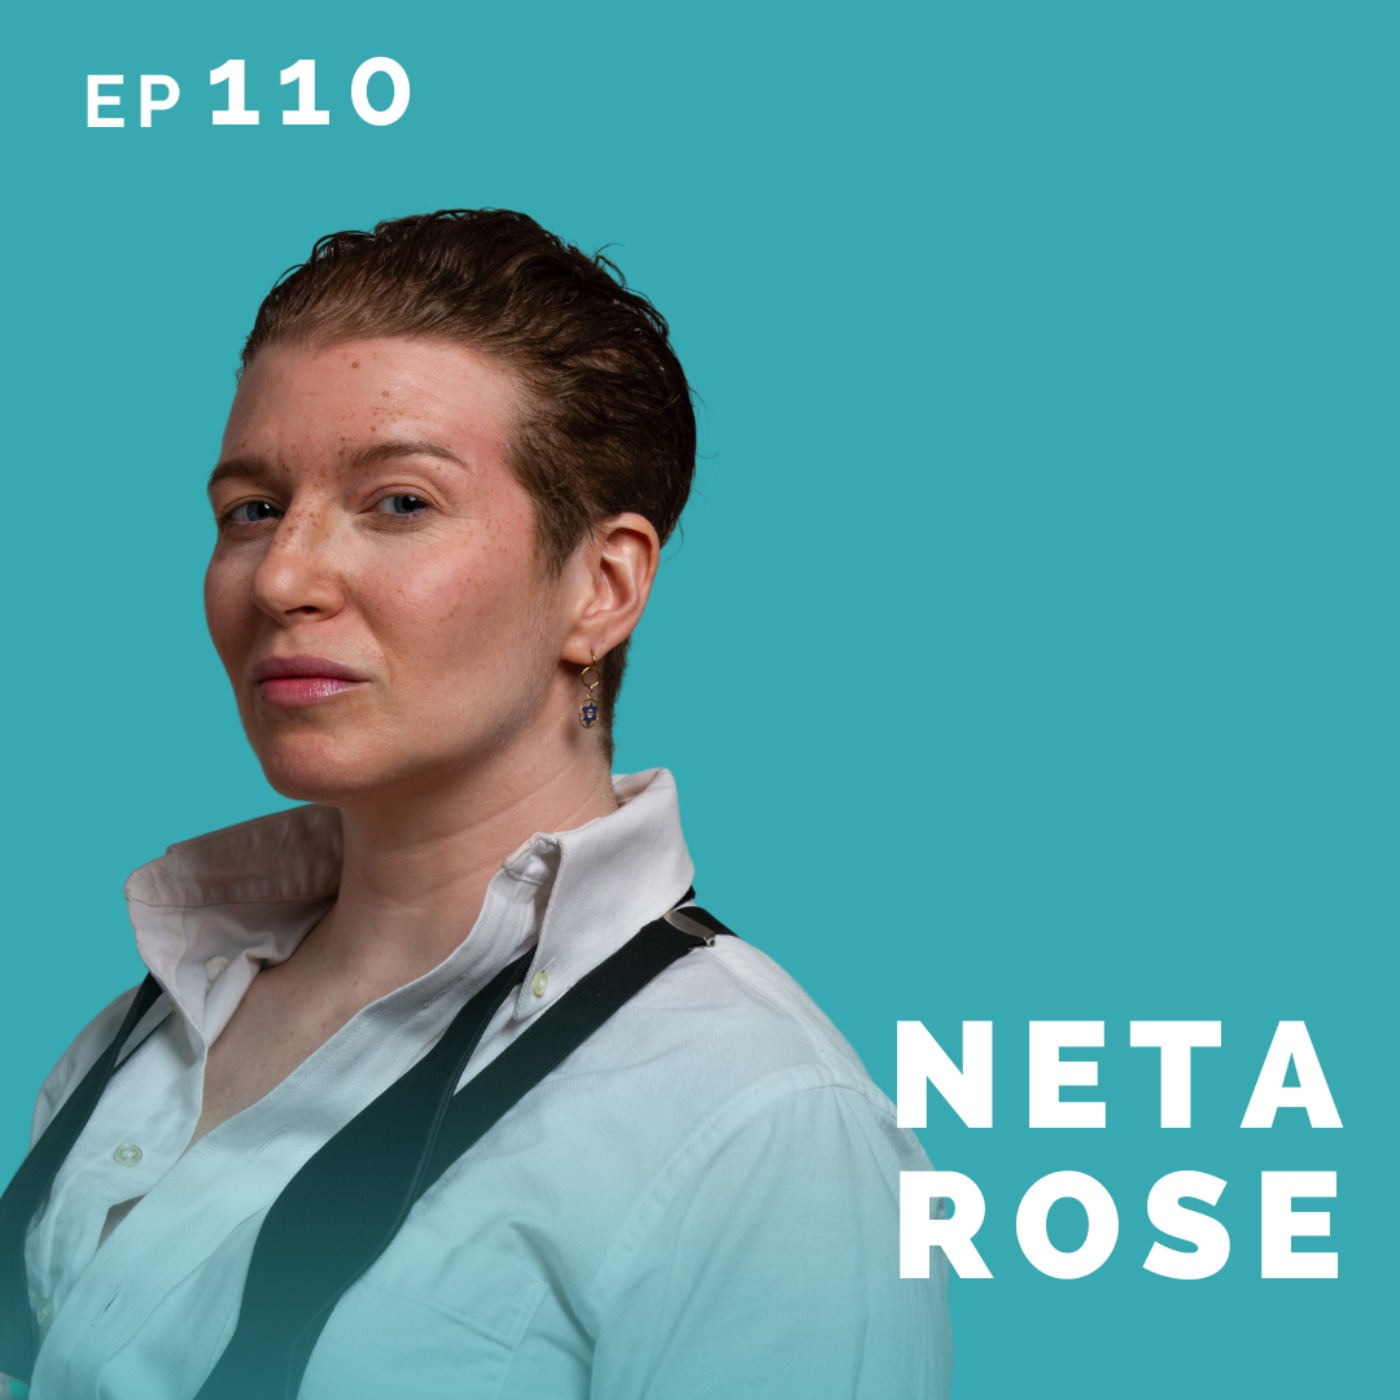 EP 110: Neta Rose: Teacher Turned Actor